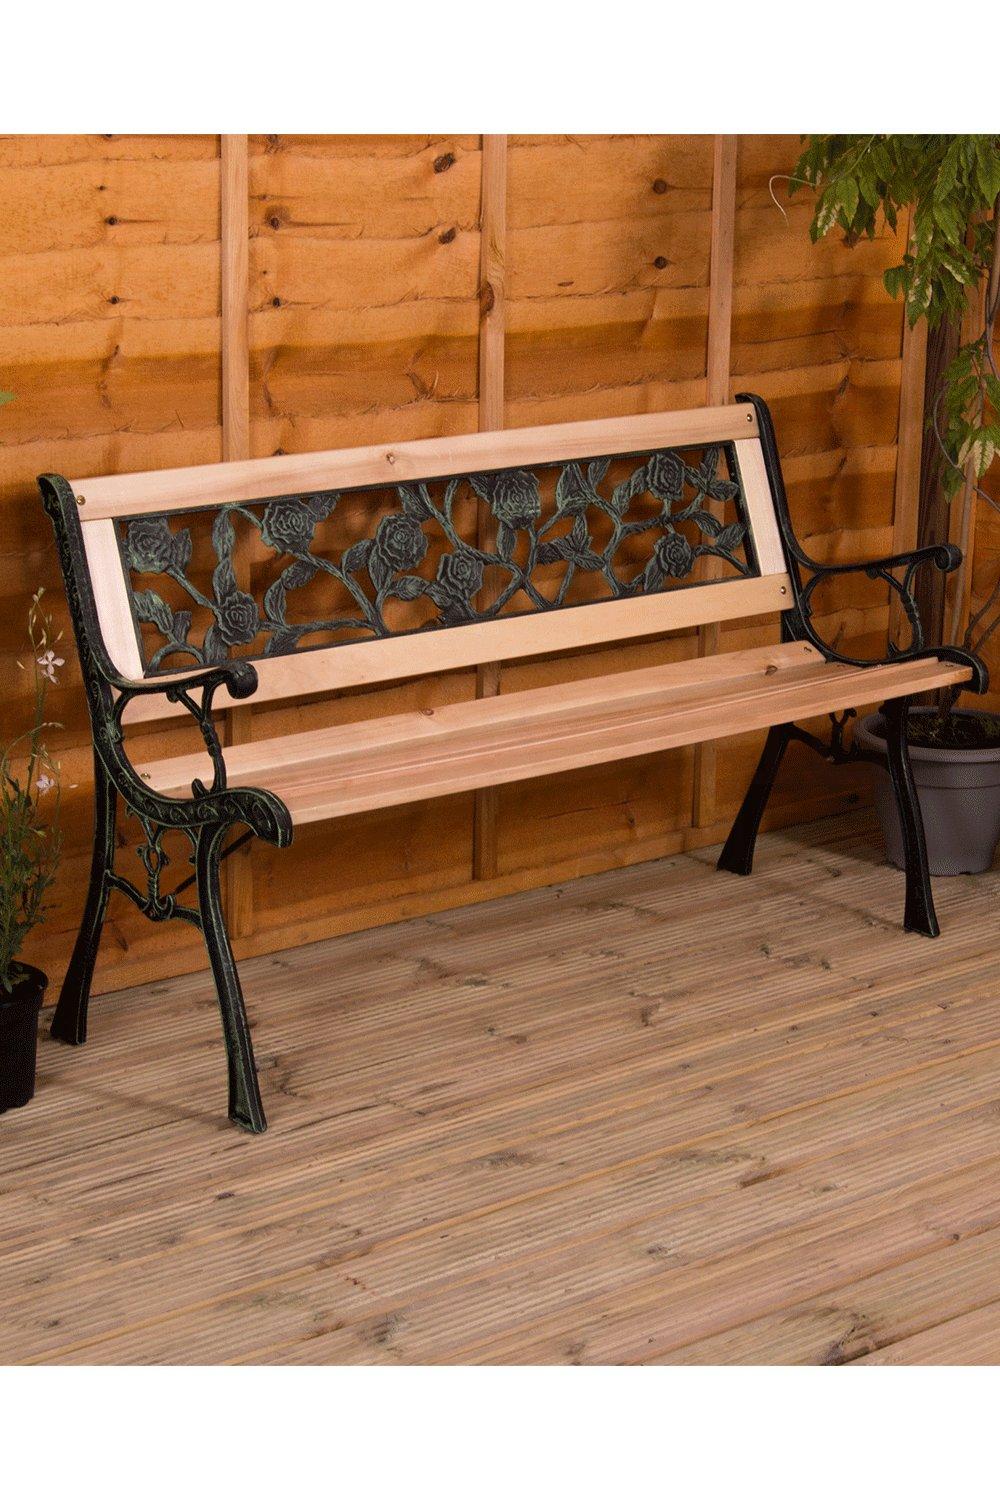 Garden Vida Garden Bench Rose Style 3 Seater Outdoor Furniture